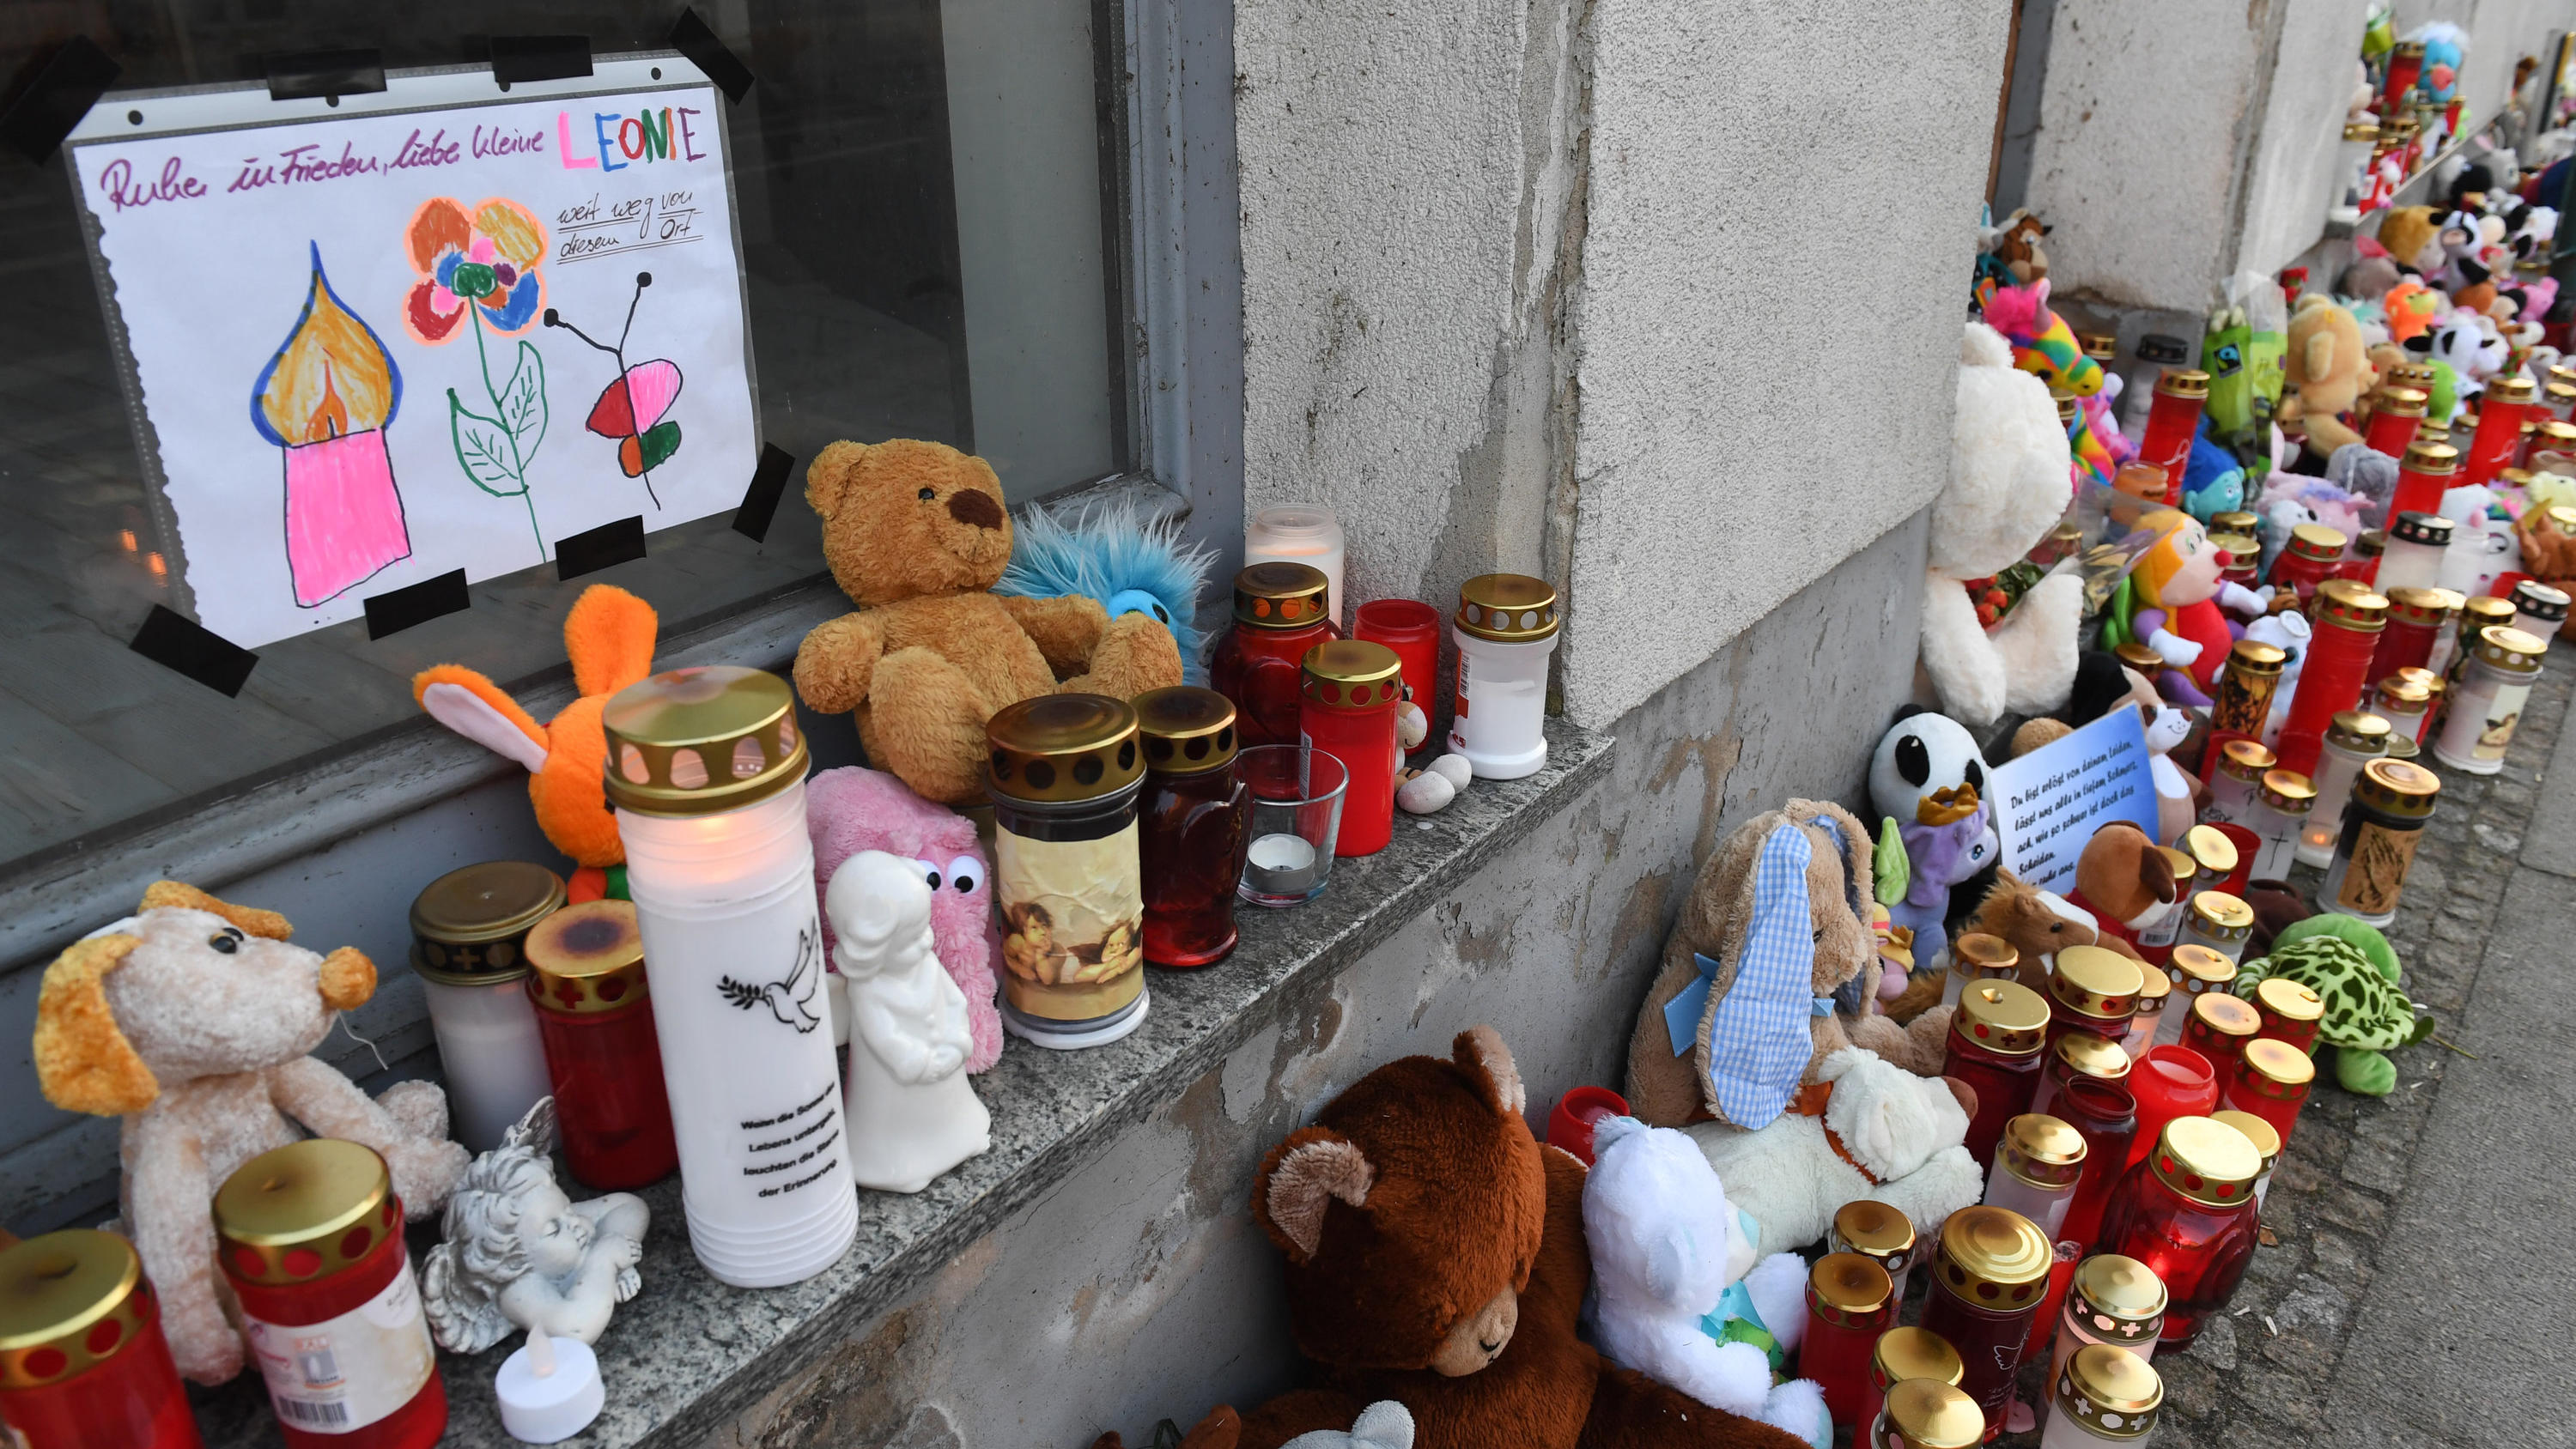 Kerzen und Plüschtiere stehen vor dem Eingang des Hauses, wo am 12.01.2019 eine Sechsjährige ums Leben kam. Knapp neun Monate nach dem Tod der sechsjährigen Leonie aus Torgelow  beginnt am 24.09.